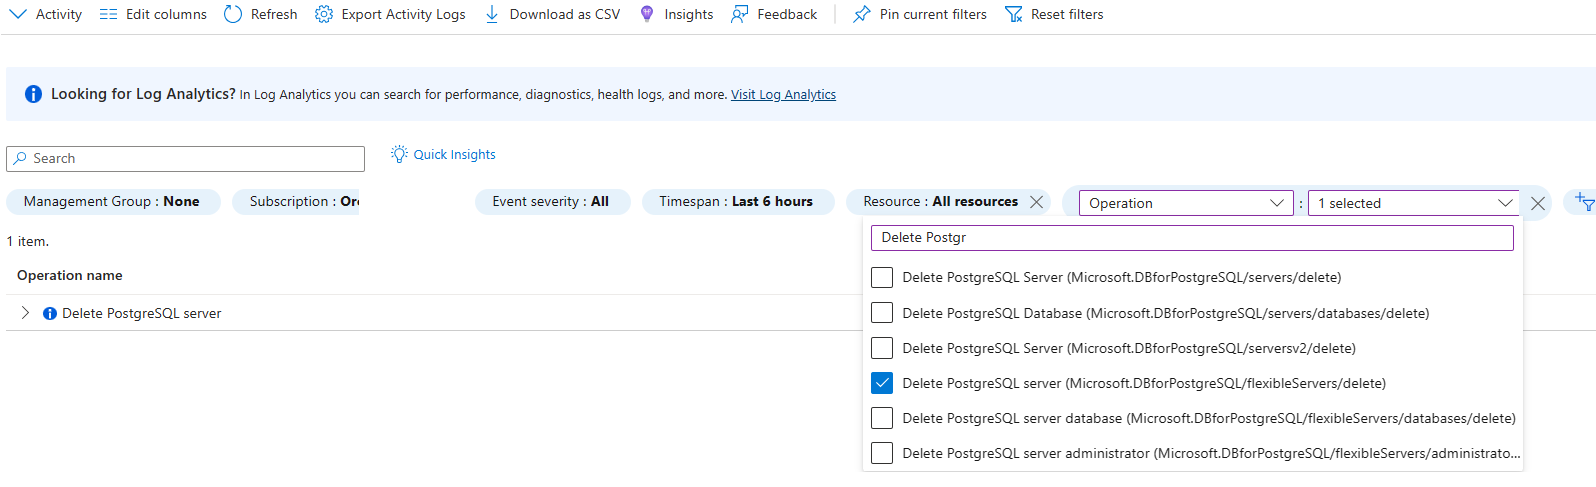 Captura de tela mostrando o log de atividades filtrado para excluir a operação do servidor PostgreSQL.